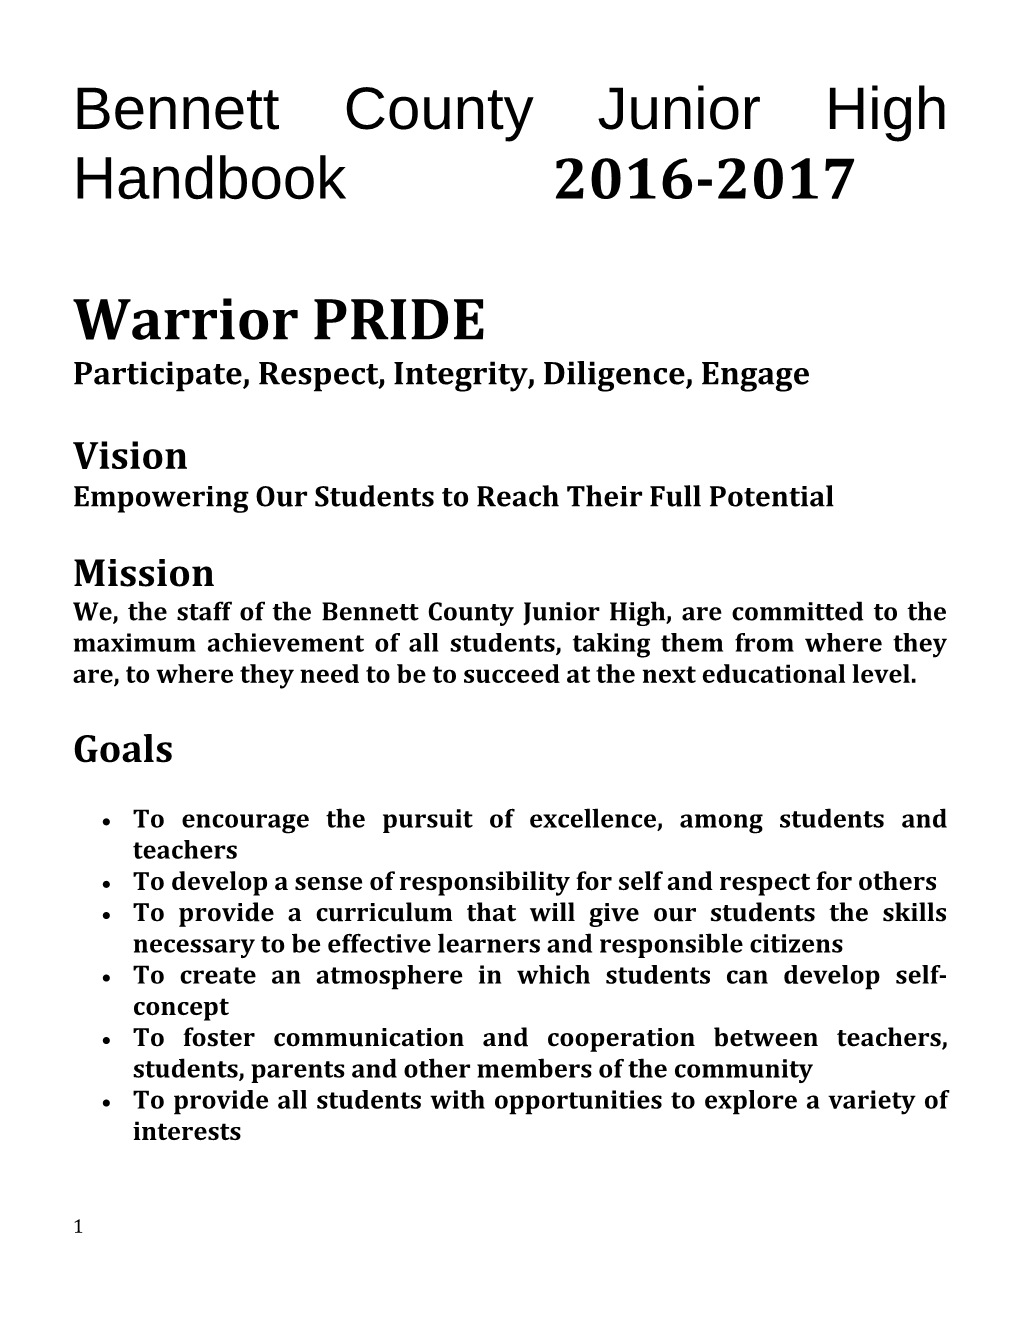 Bennett County Junior High Handbook 2016-2017